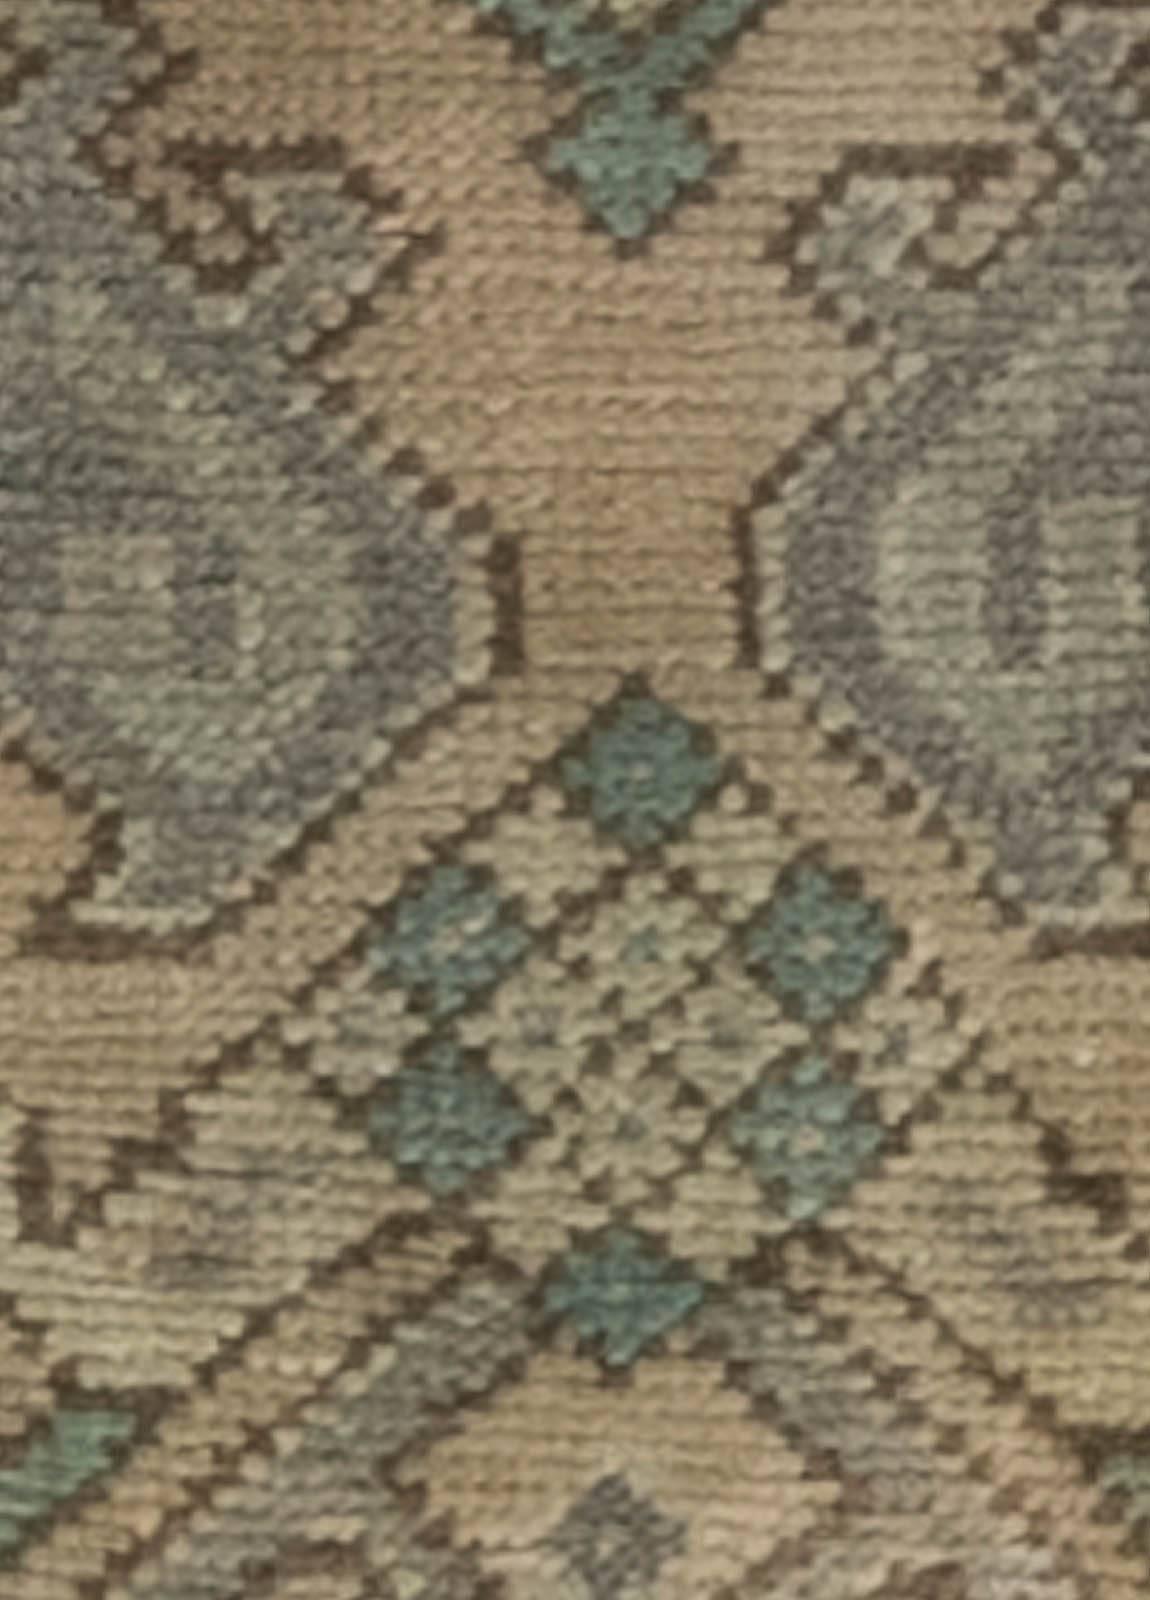 Antique Oushak rug 'Fragment'
Size: 2'5